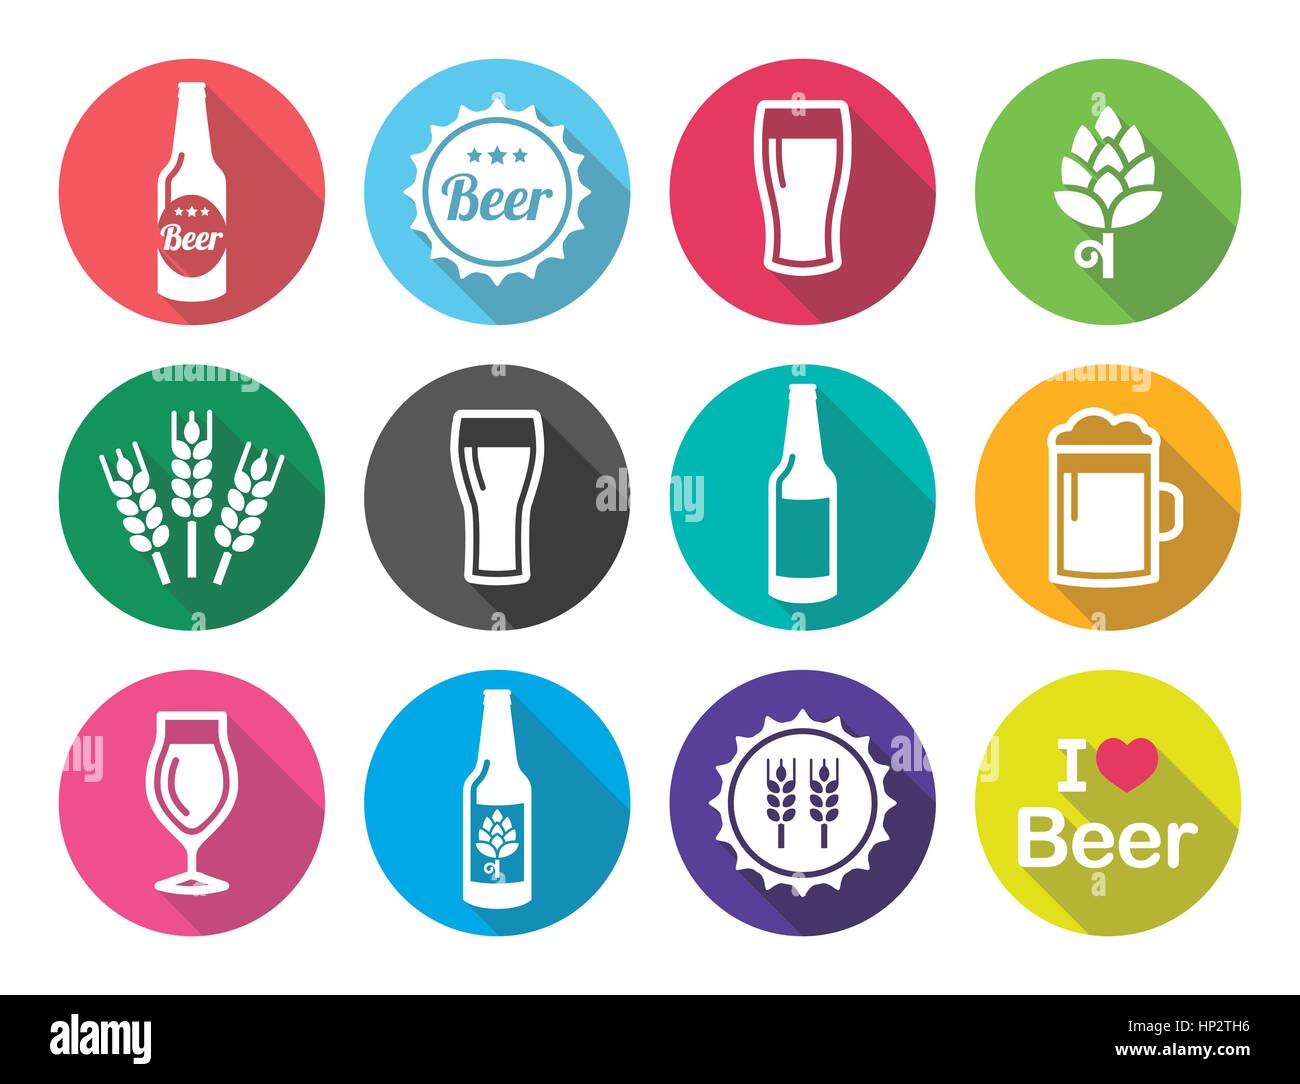 Télévision bière ronde design icons set - bouteille, verre, pinte. La consommation de bière, pub ronde colorée icons set isolated on white Illustration de Vecteur